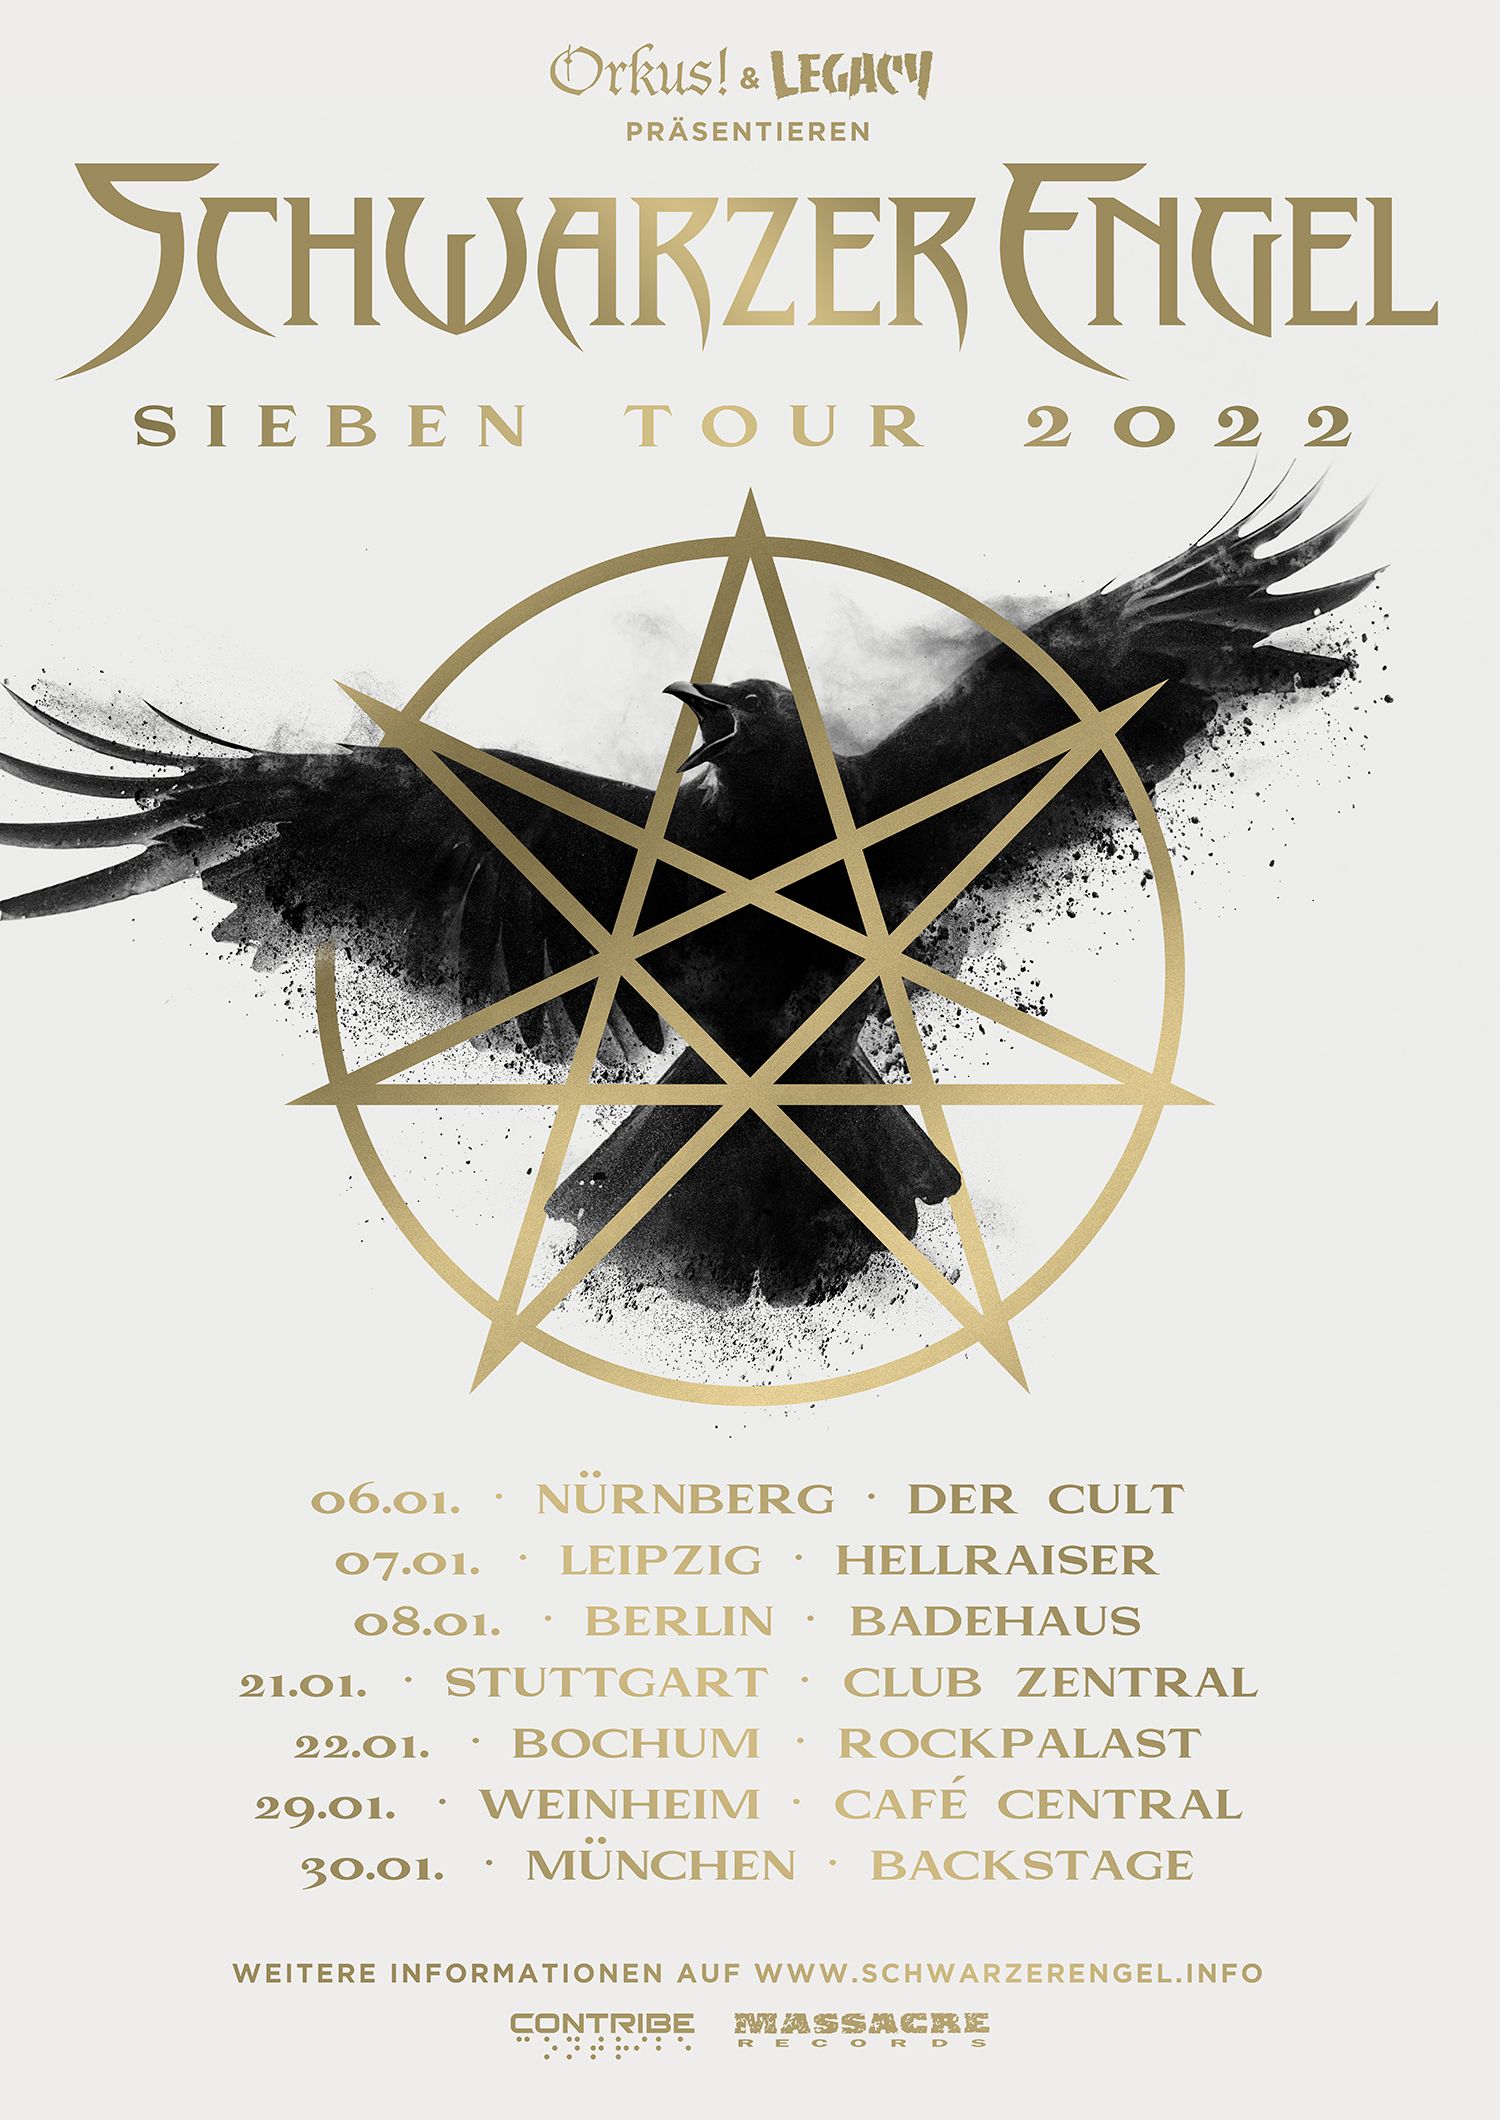 Tourflyer der Sieben Tour 2022 von Schwarzer Engel